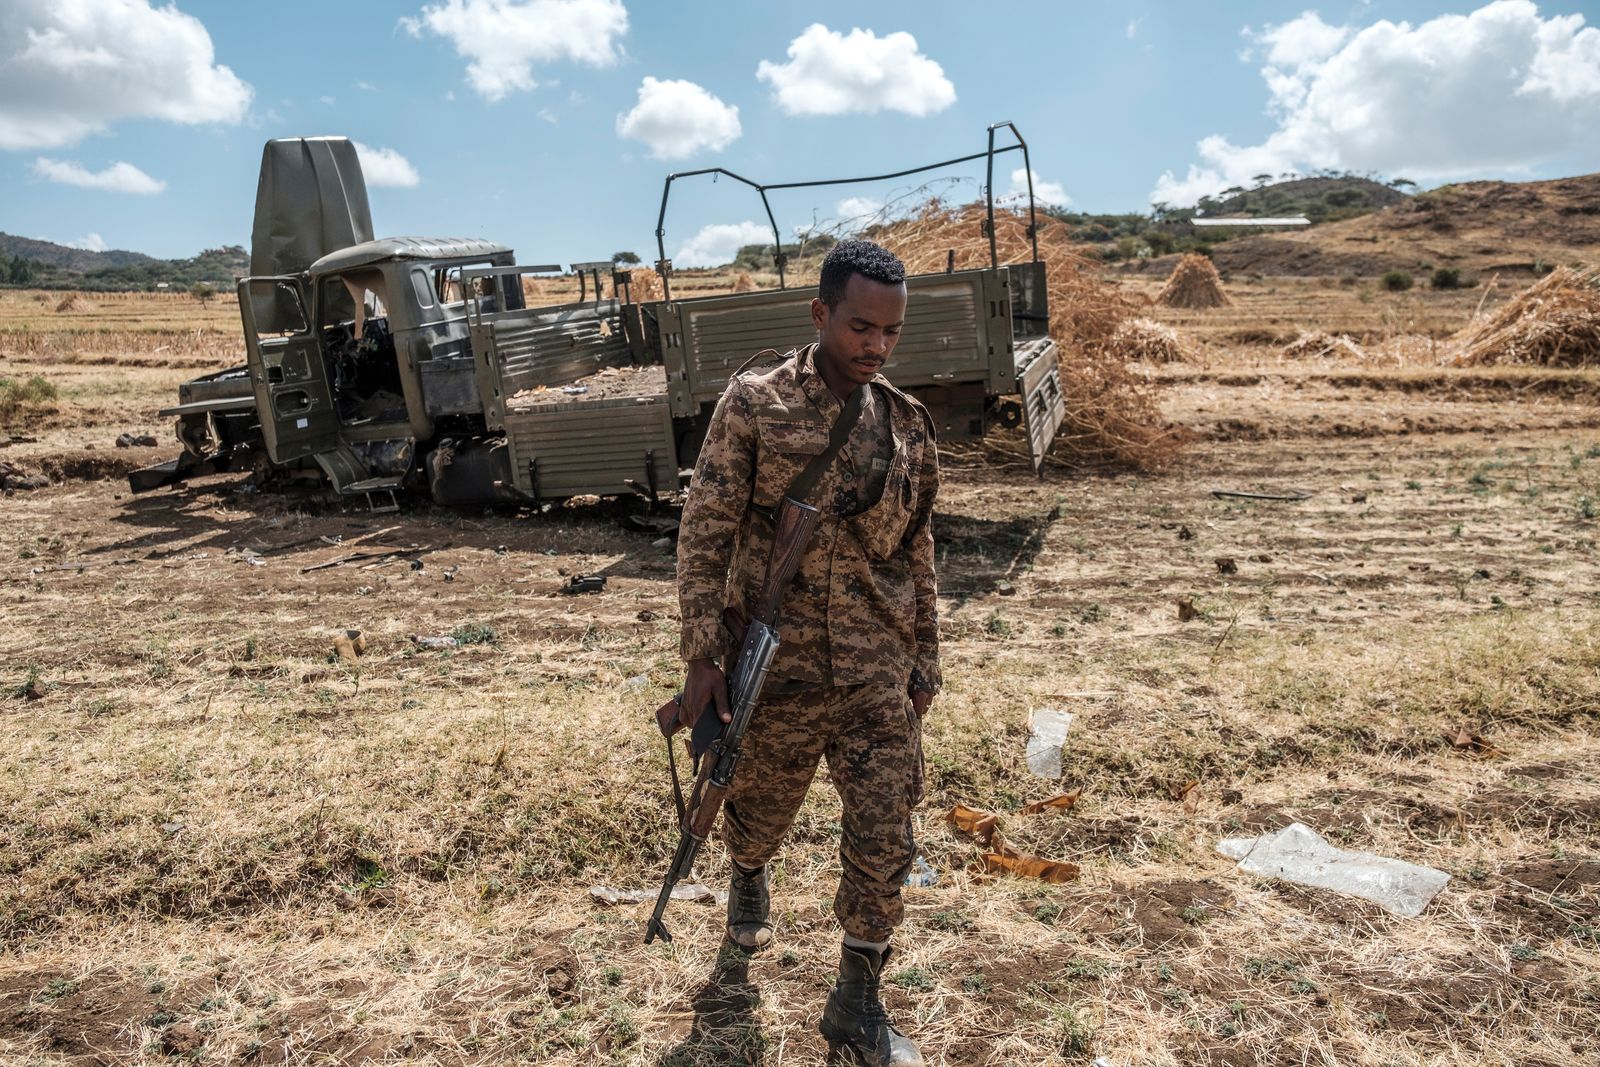 عنصر في قوات الدفاع الاثيوبية بالقرب من شاحنة عسكرية شرق مدينة ألاماتا الاثيوبية. 10 ديسمبر 2020 - AFP